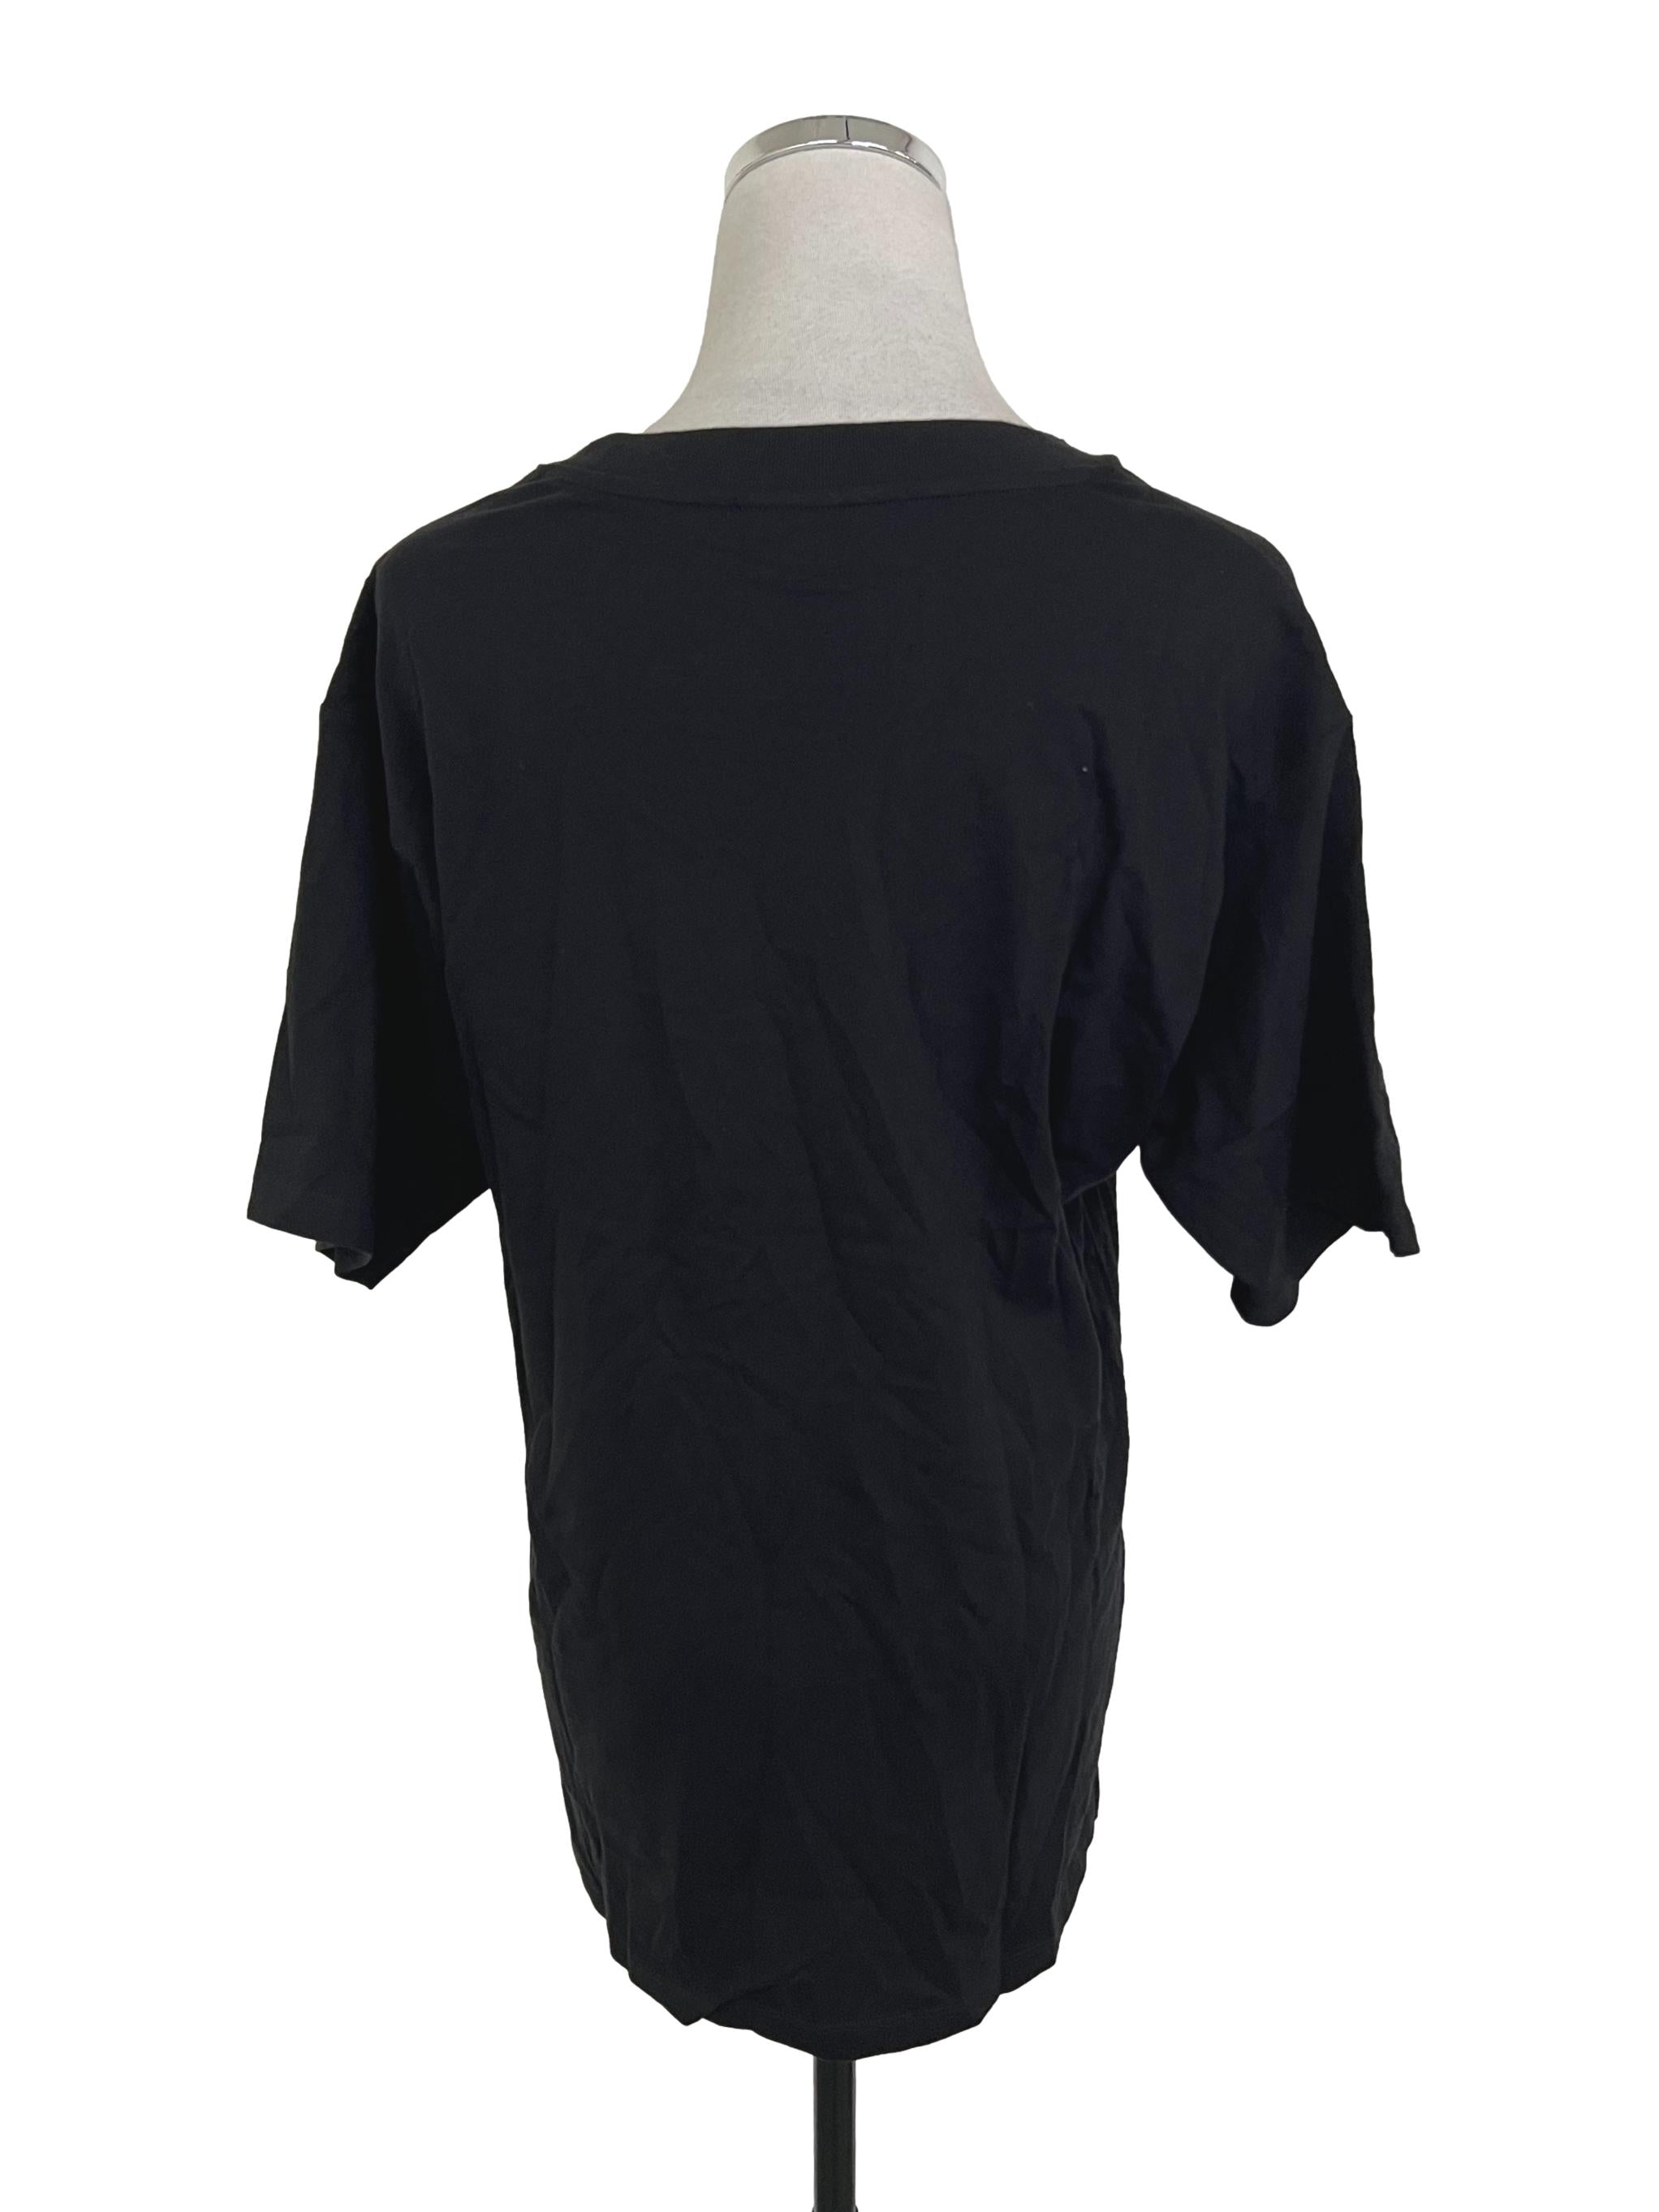 Midnight Black Short Sleeved T-Shirt